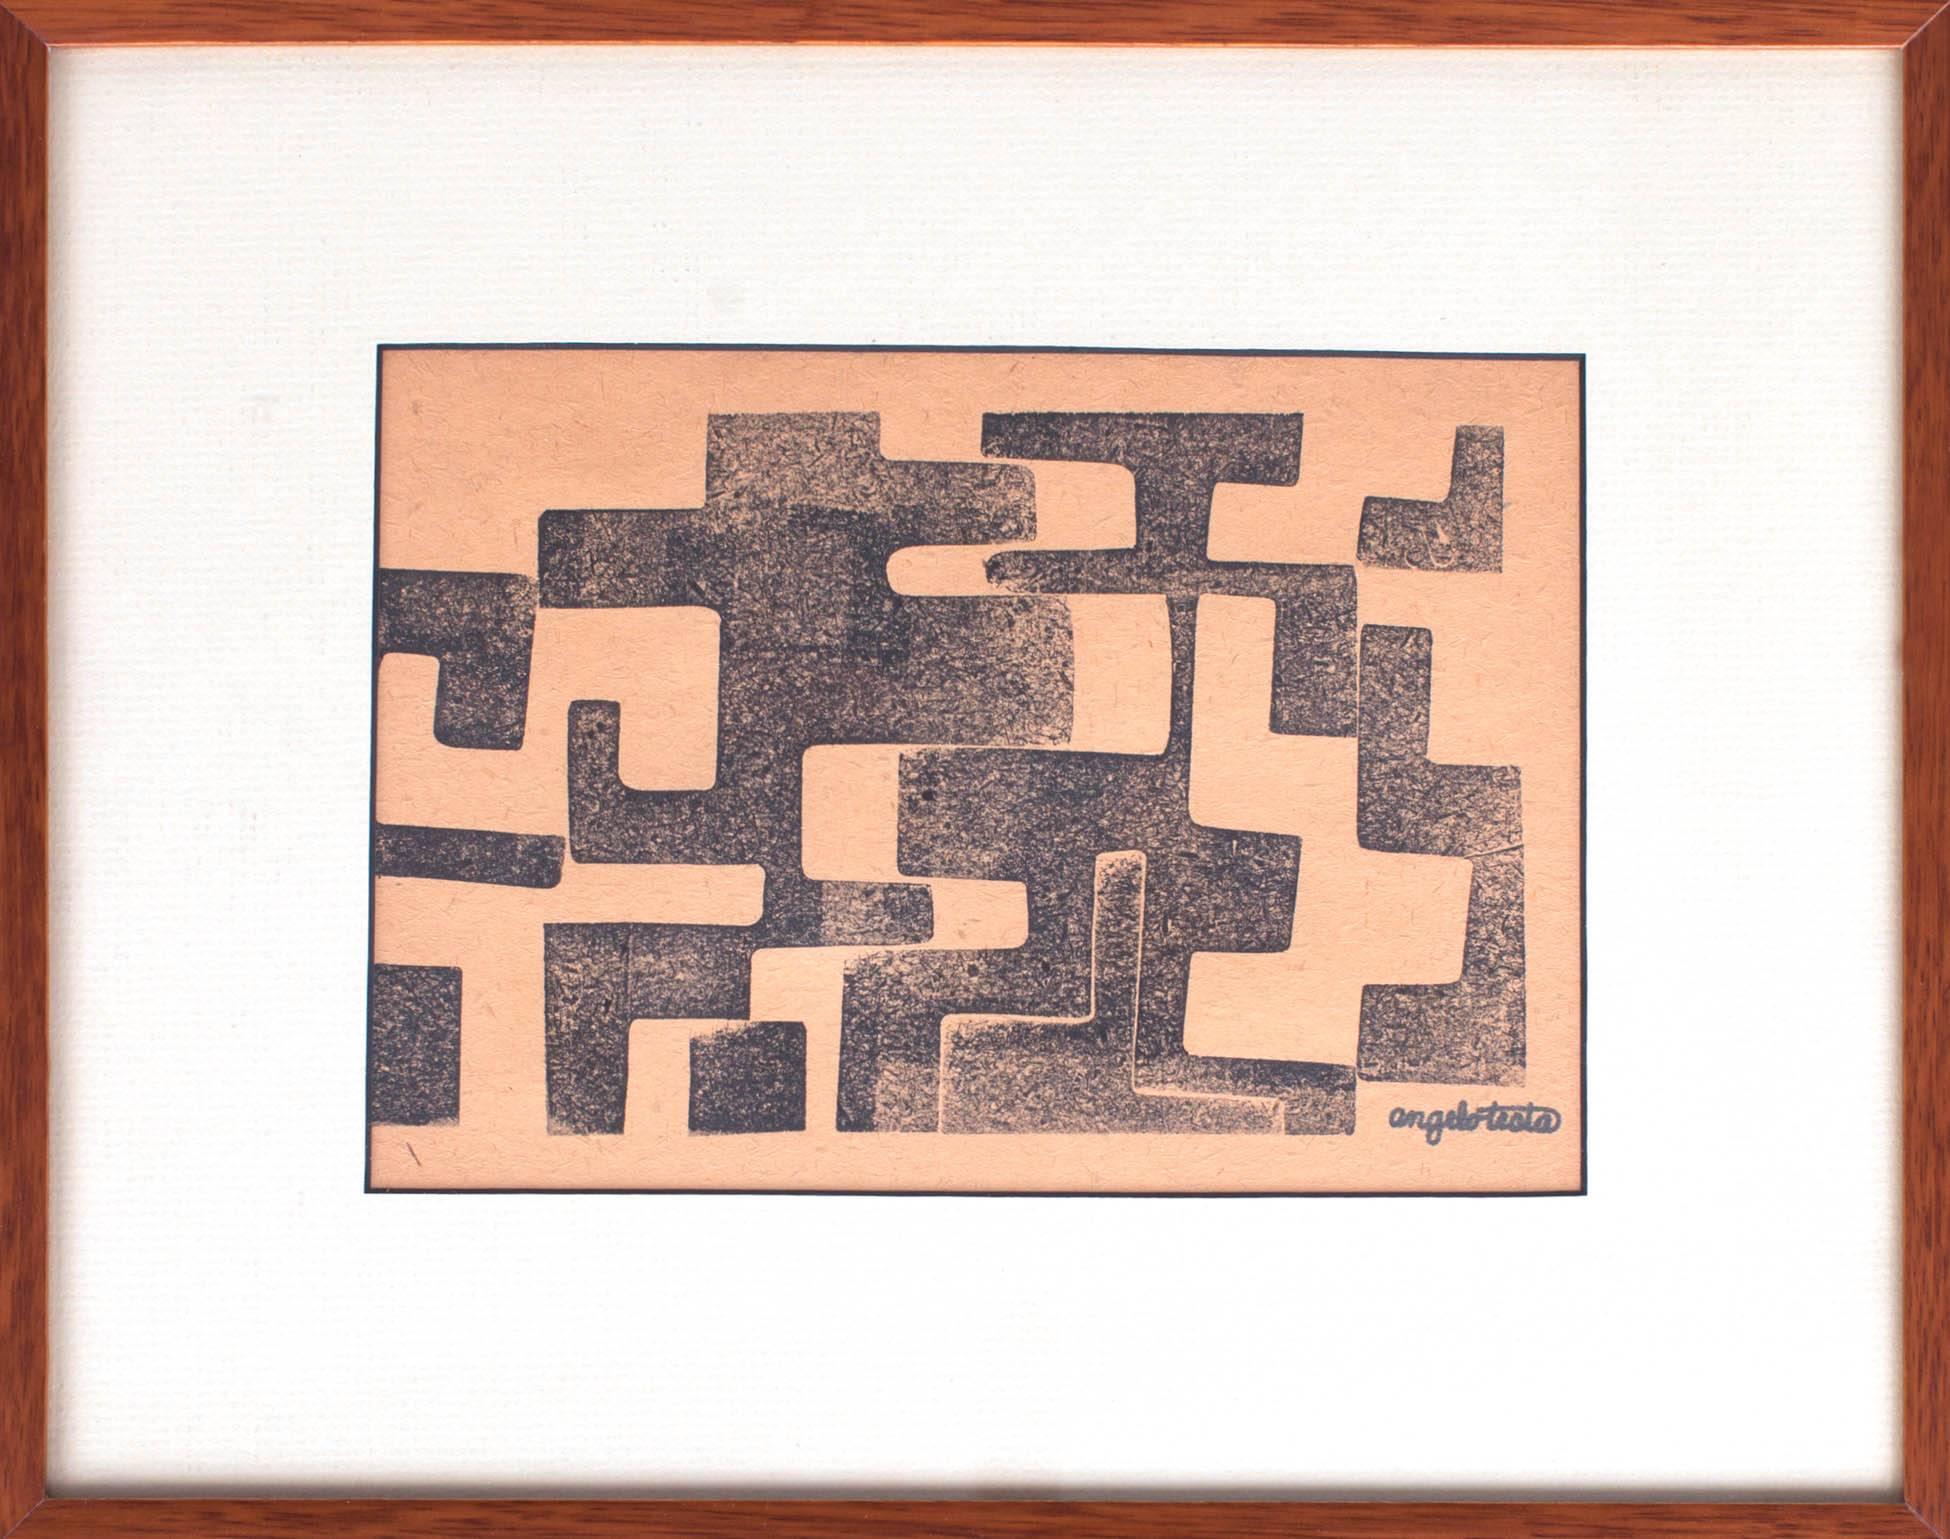 Angelo Testa (1921-1984)
Zwei signierte geometrische Drucke des bedeutenden Textildesigners Angelo Testa, eines Schülers von László Moholy-Nagy, der für seine komplexen abstrakten Stoffe bekannt ist, die er in den 1950er und 1960er Jahren für Knoll